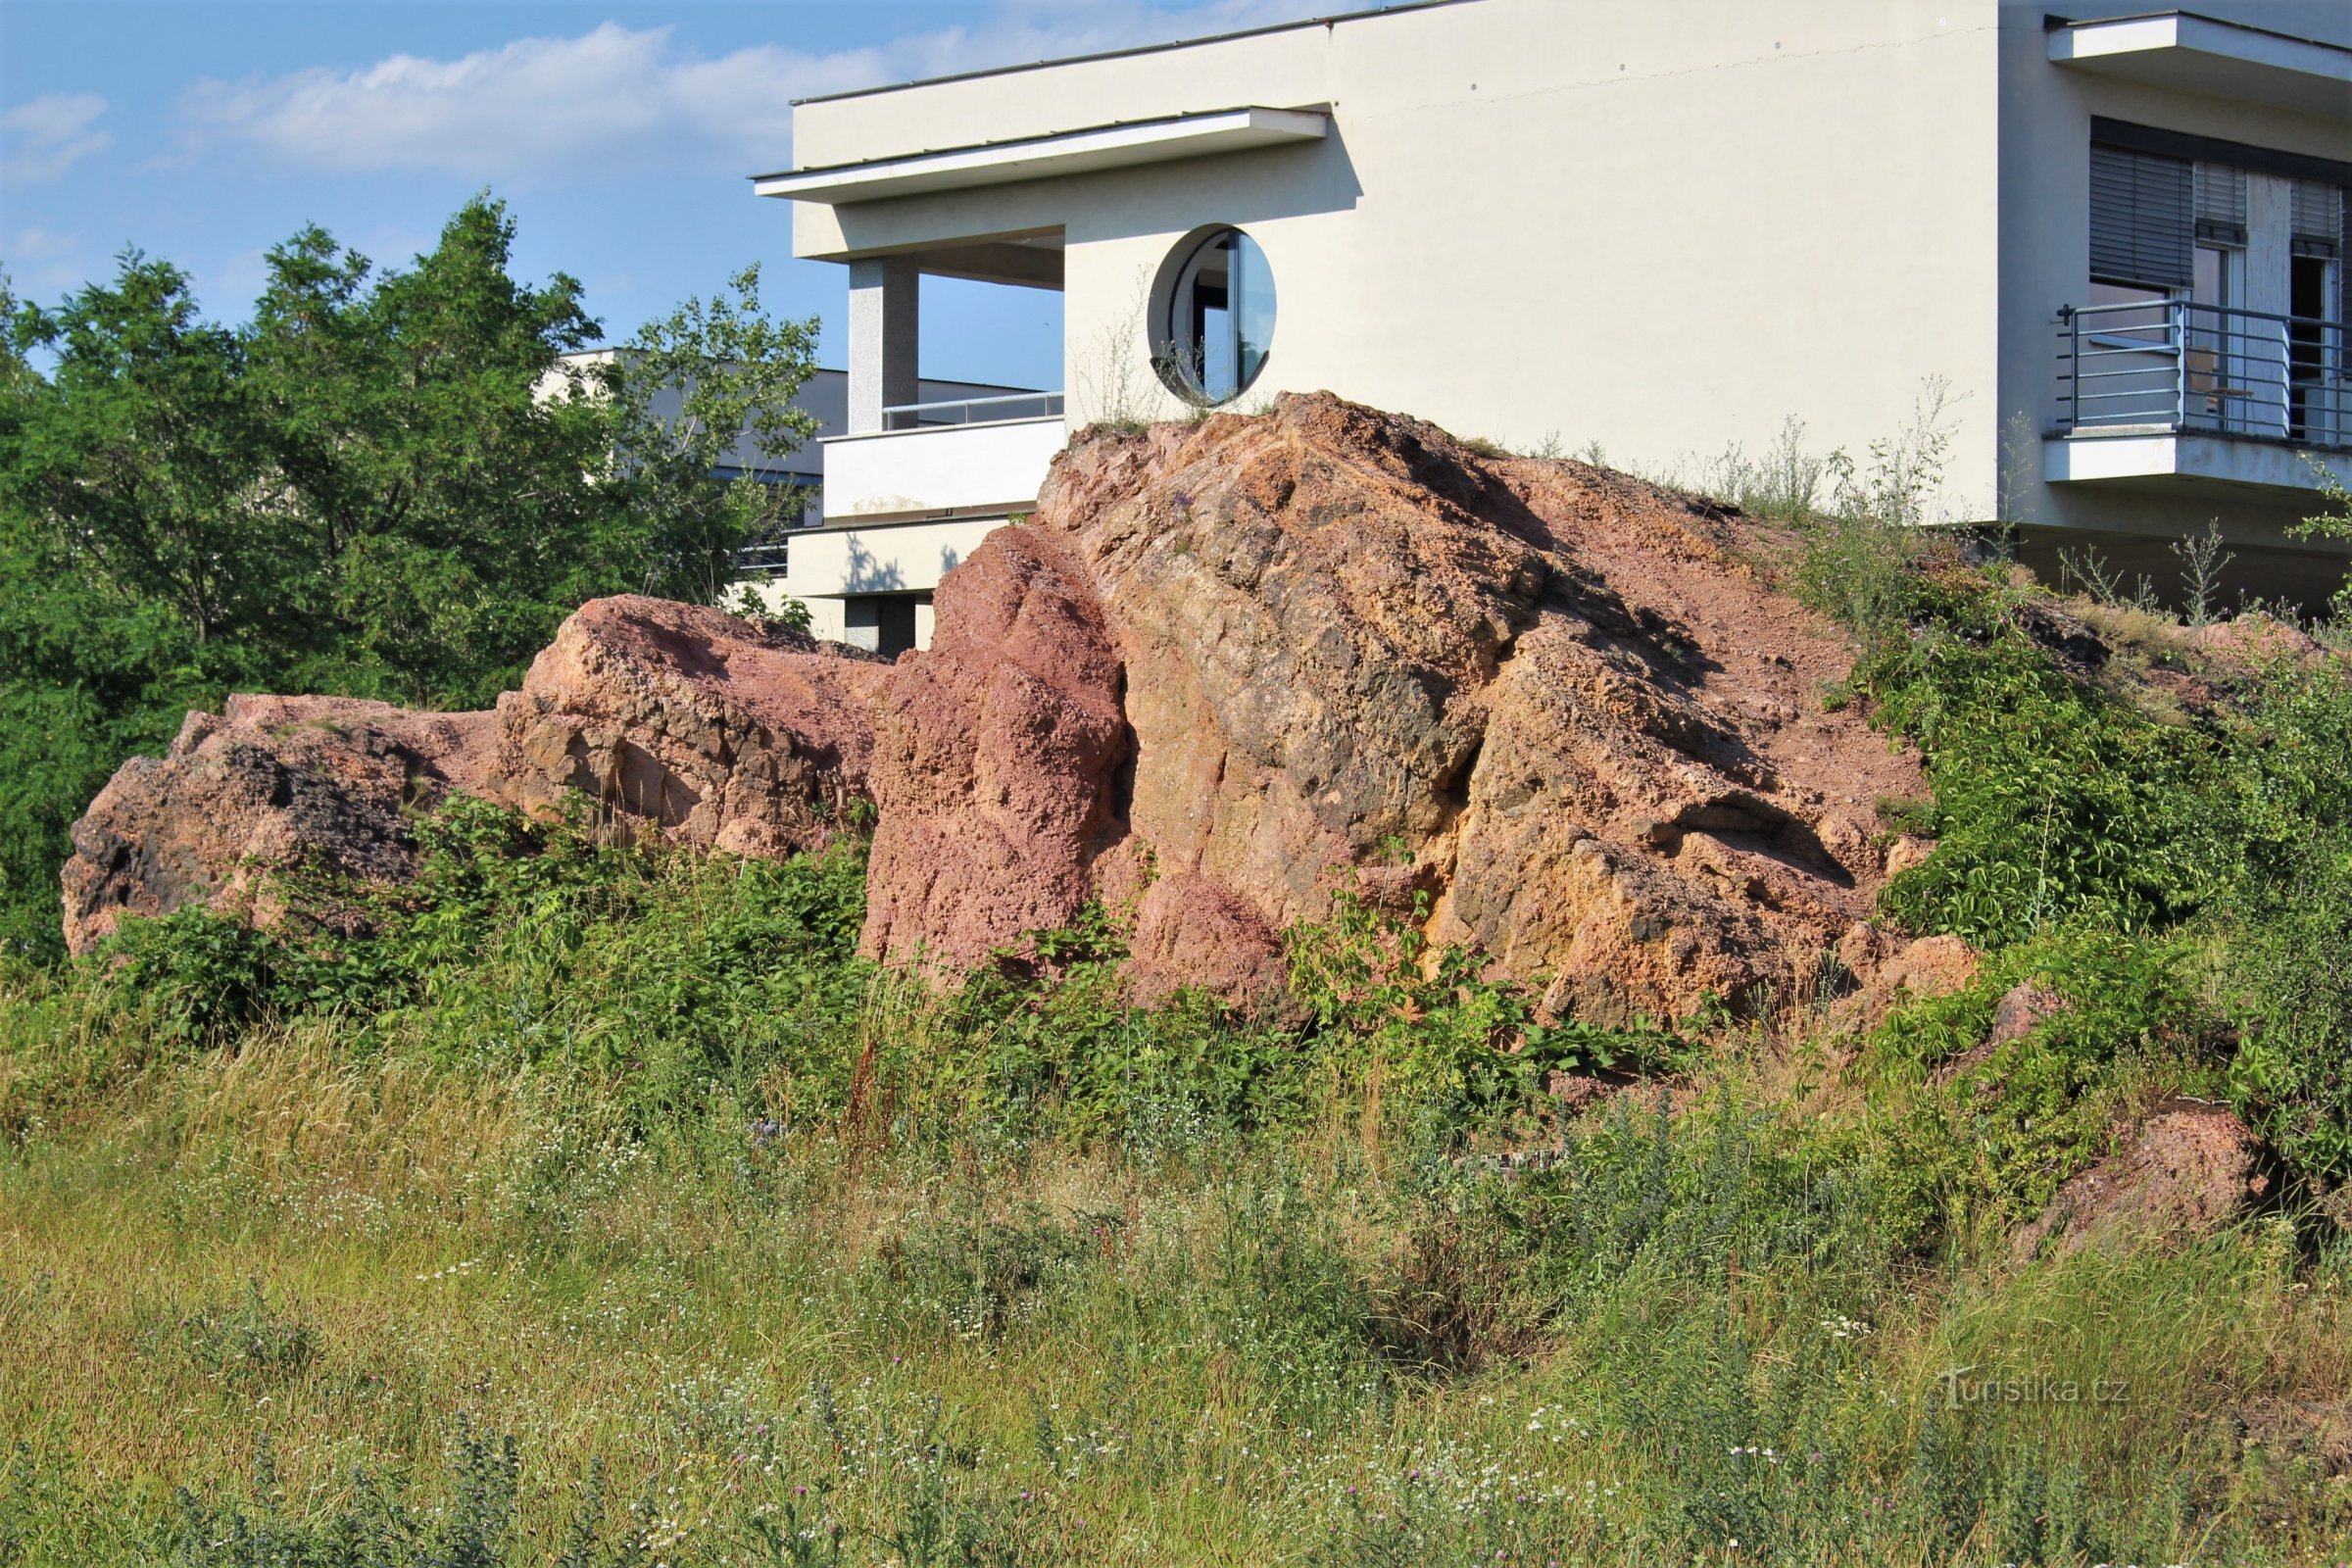 ヘリゴランド岩、その後ろにあるマサリク腫瘍学研究所の建物